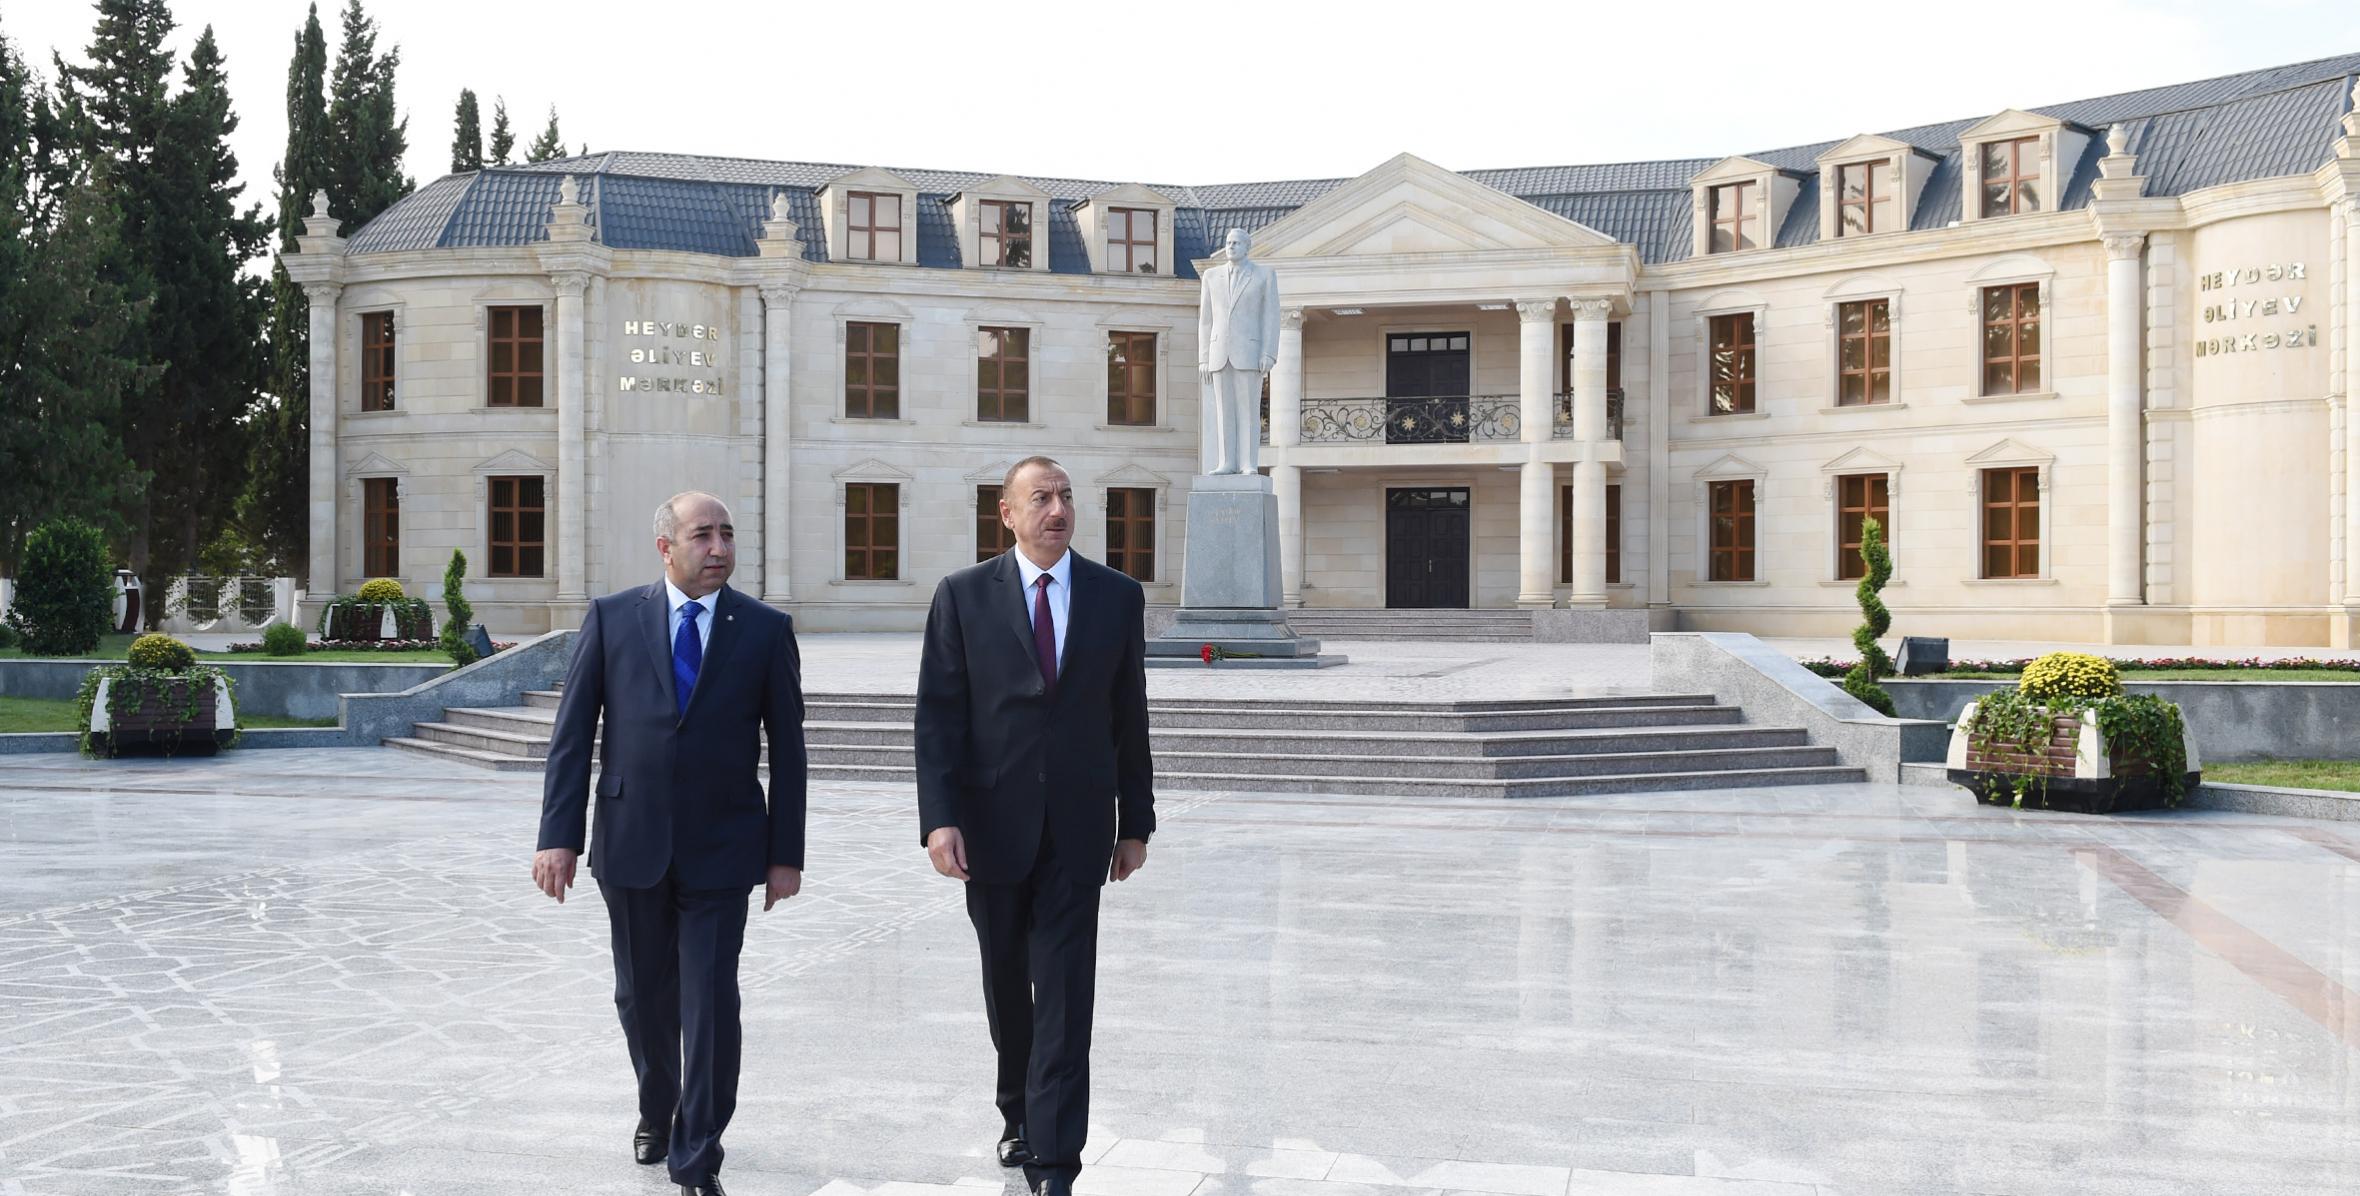 Ilham Aliyev arrived in Kurdamir District